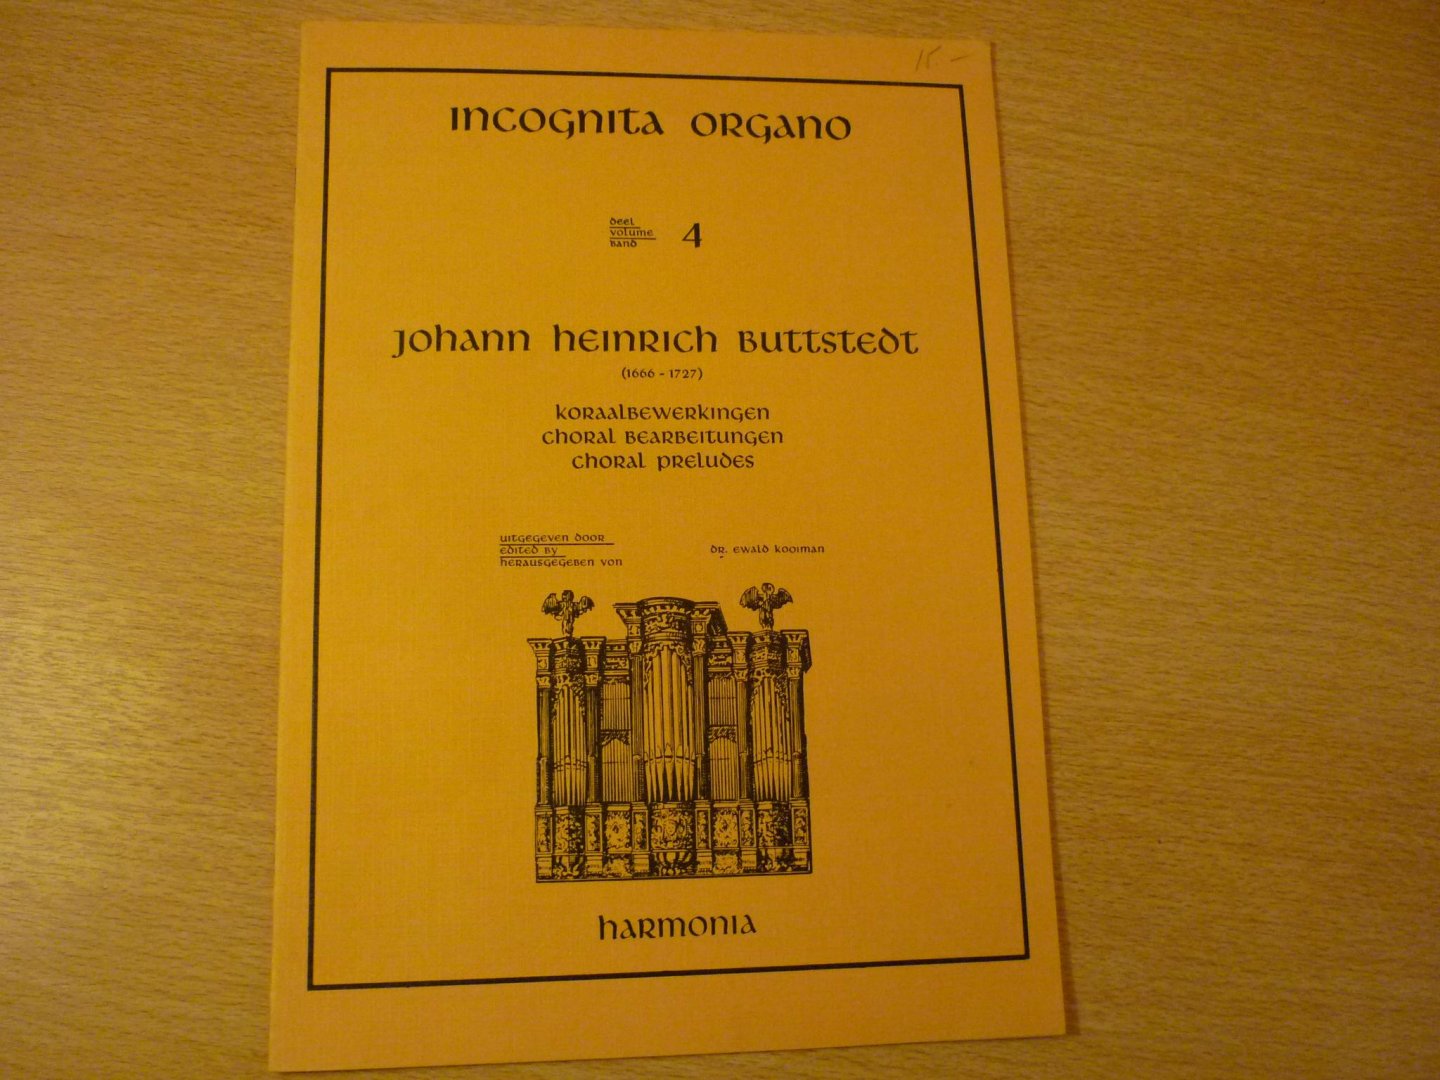 Buttstedt; Johann Heinrich (1666 - 1727) - Koraalbewerkingen; Incognita Organo - Deel 4